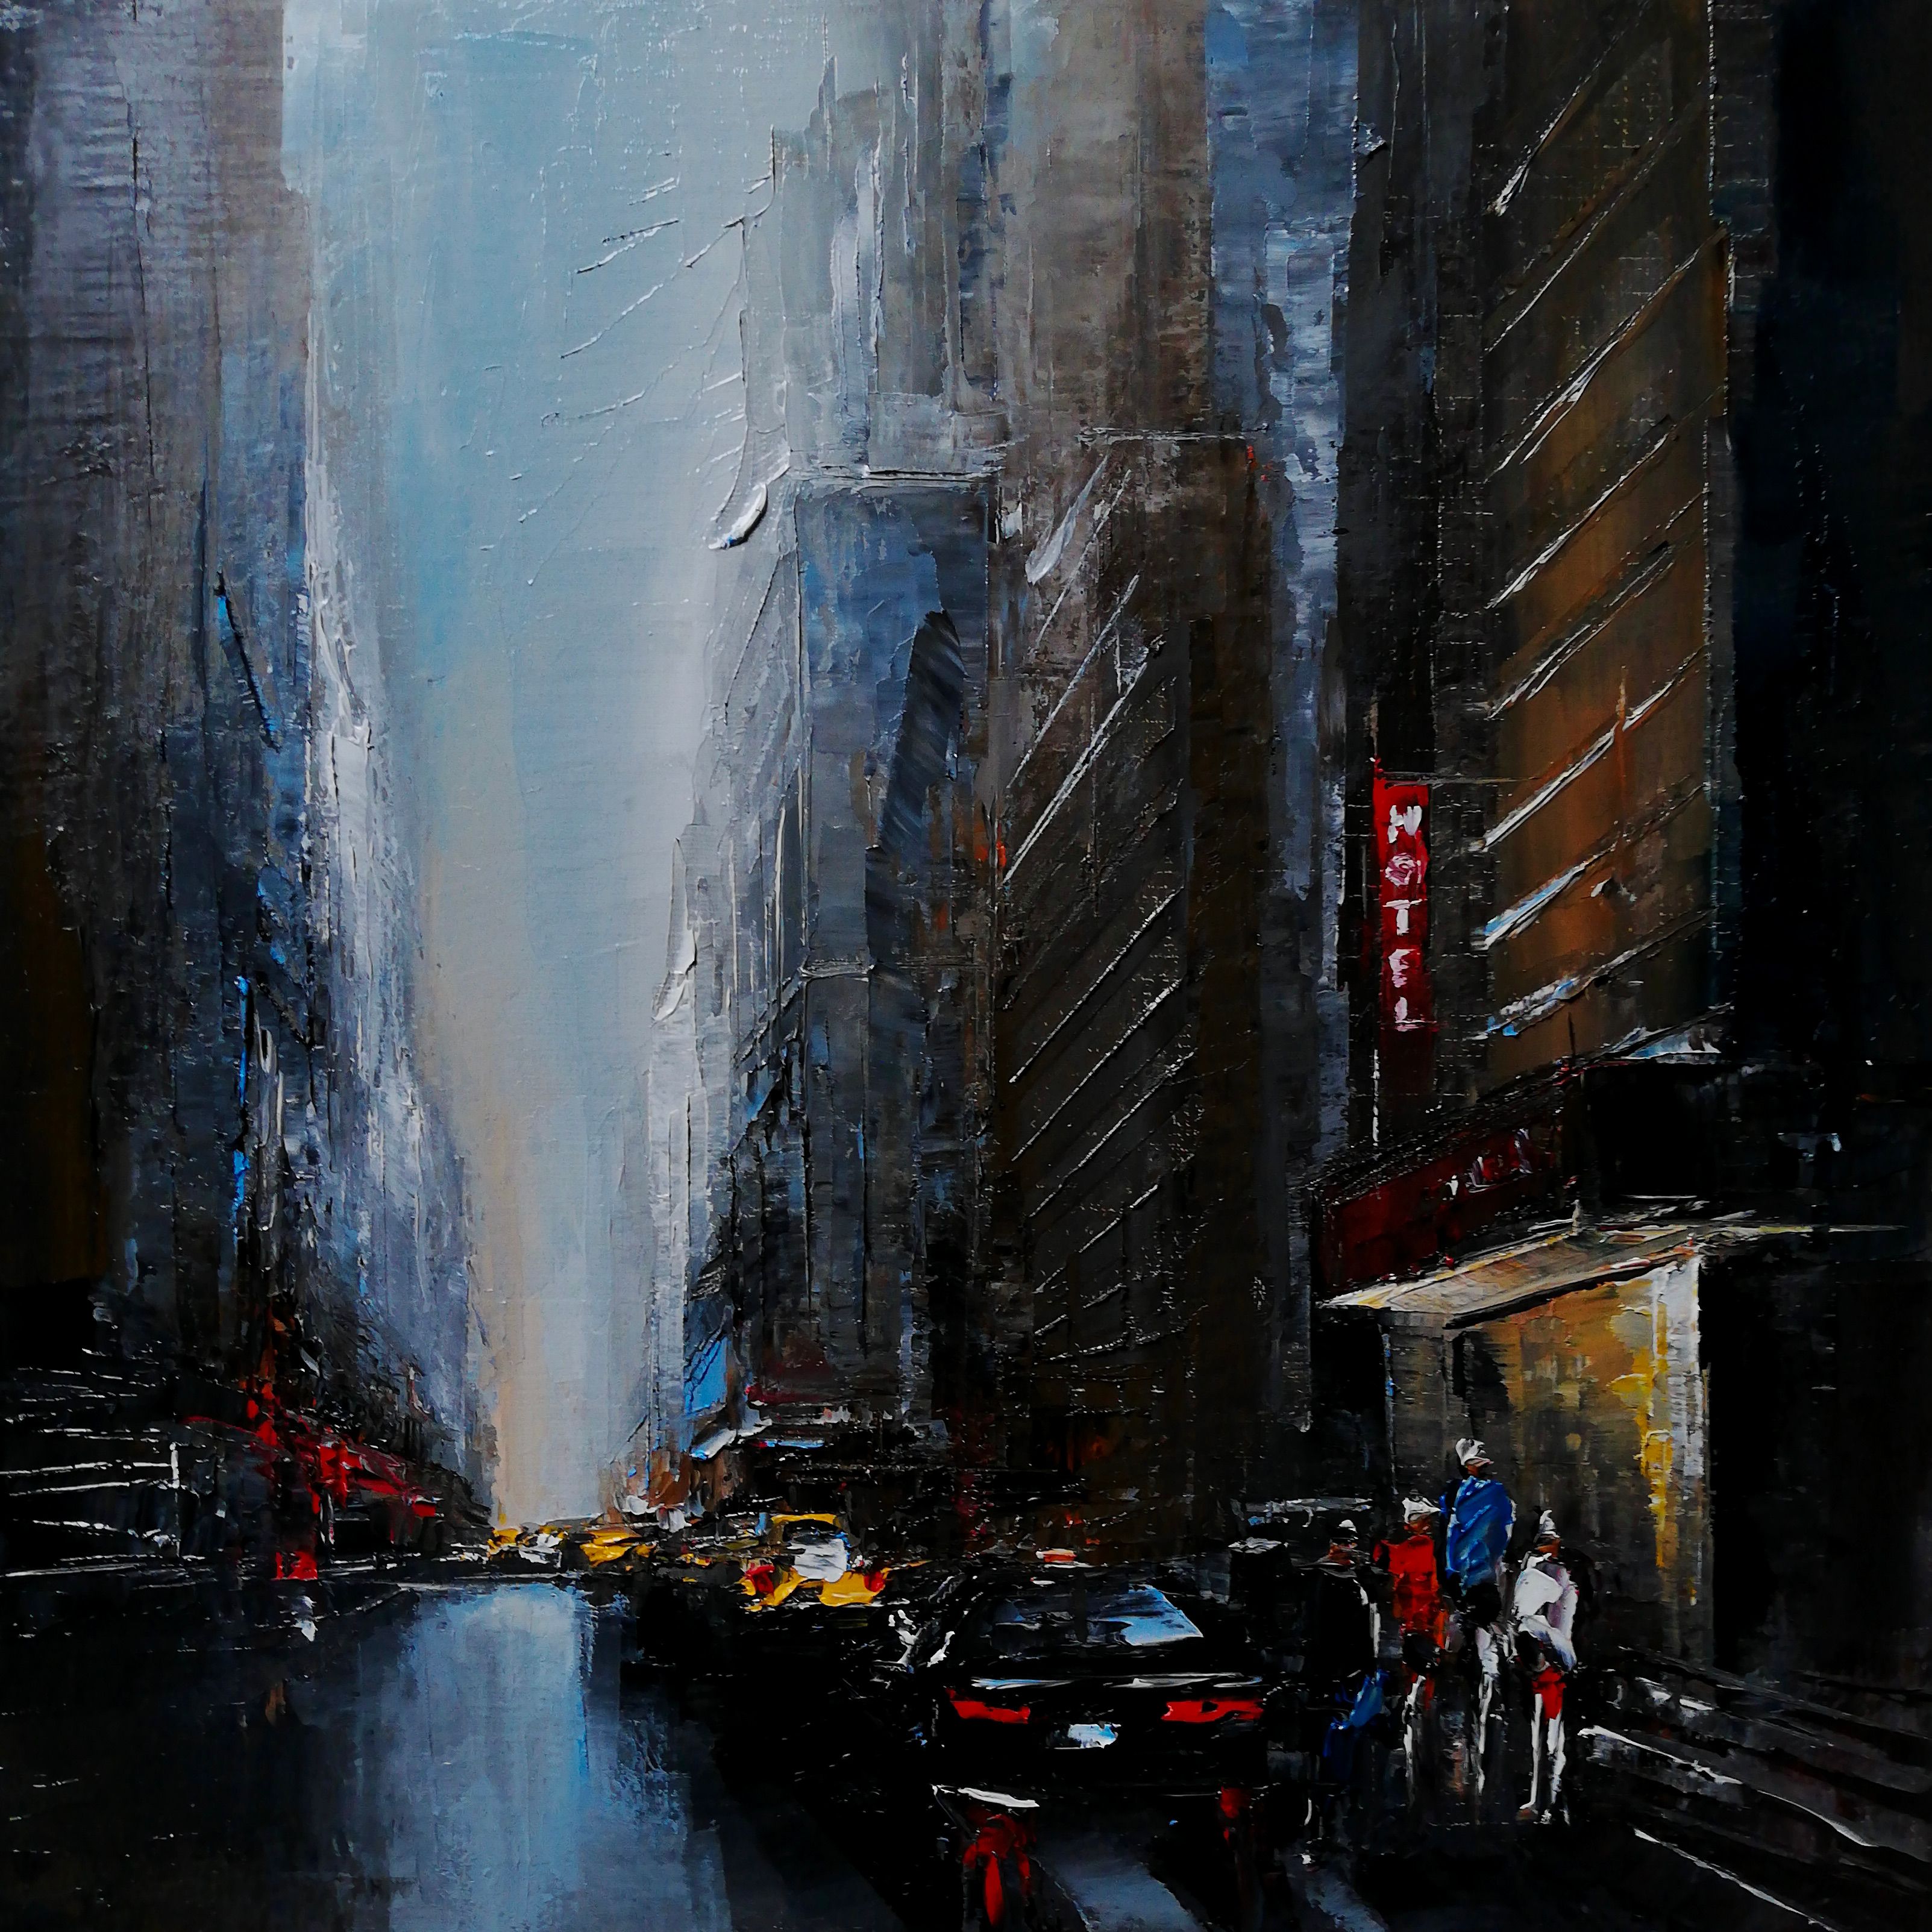 Philippe Meslin "Manhattan traffic Huile sur lin" tableau, est une peinture à l'huile figurative en couleur d'une scène de rue de Manhattan